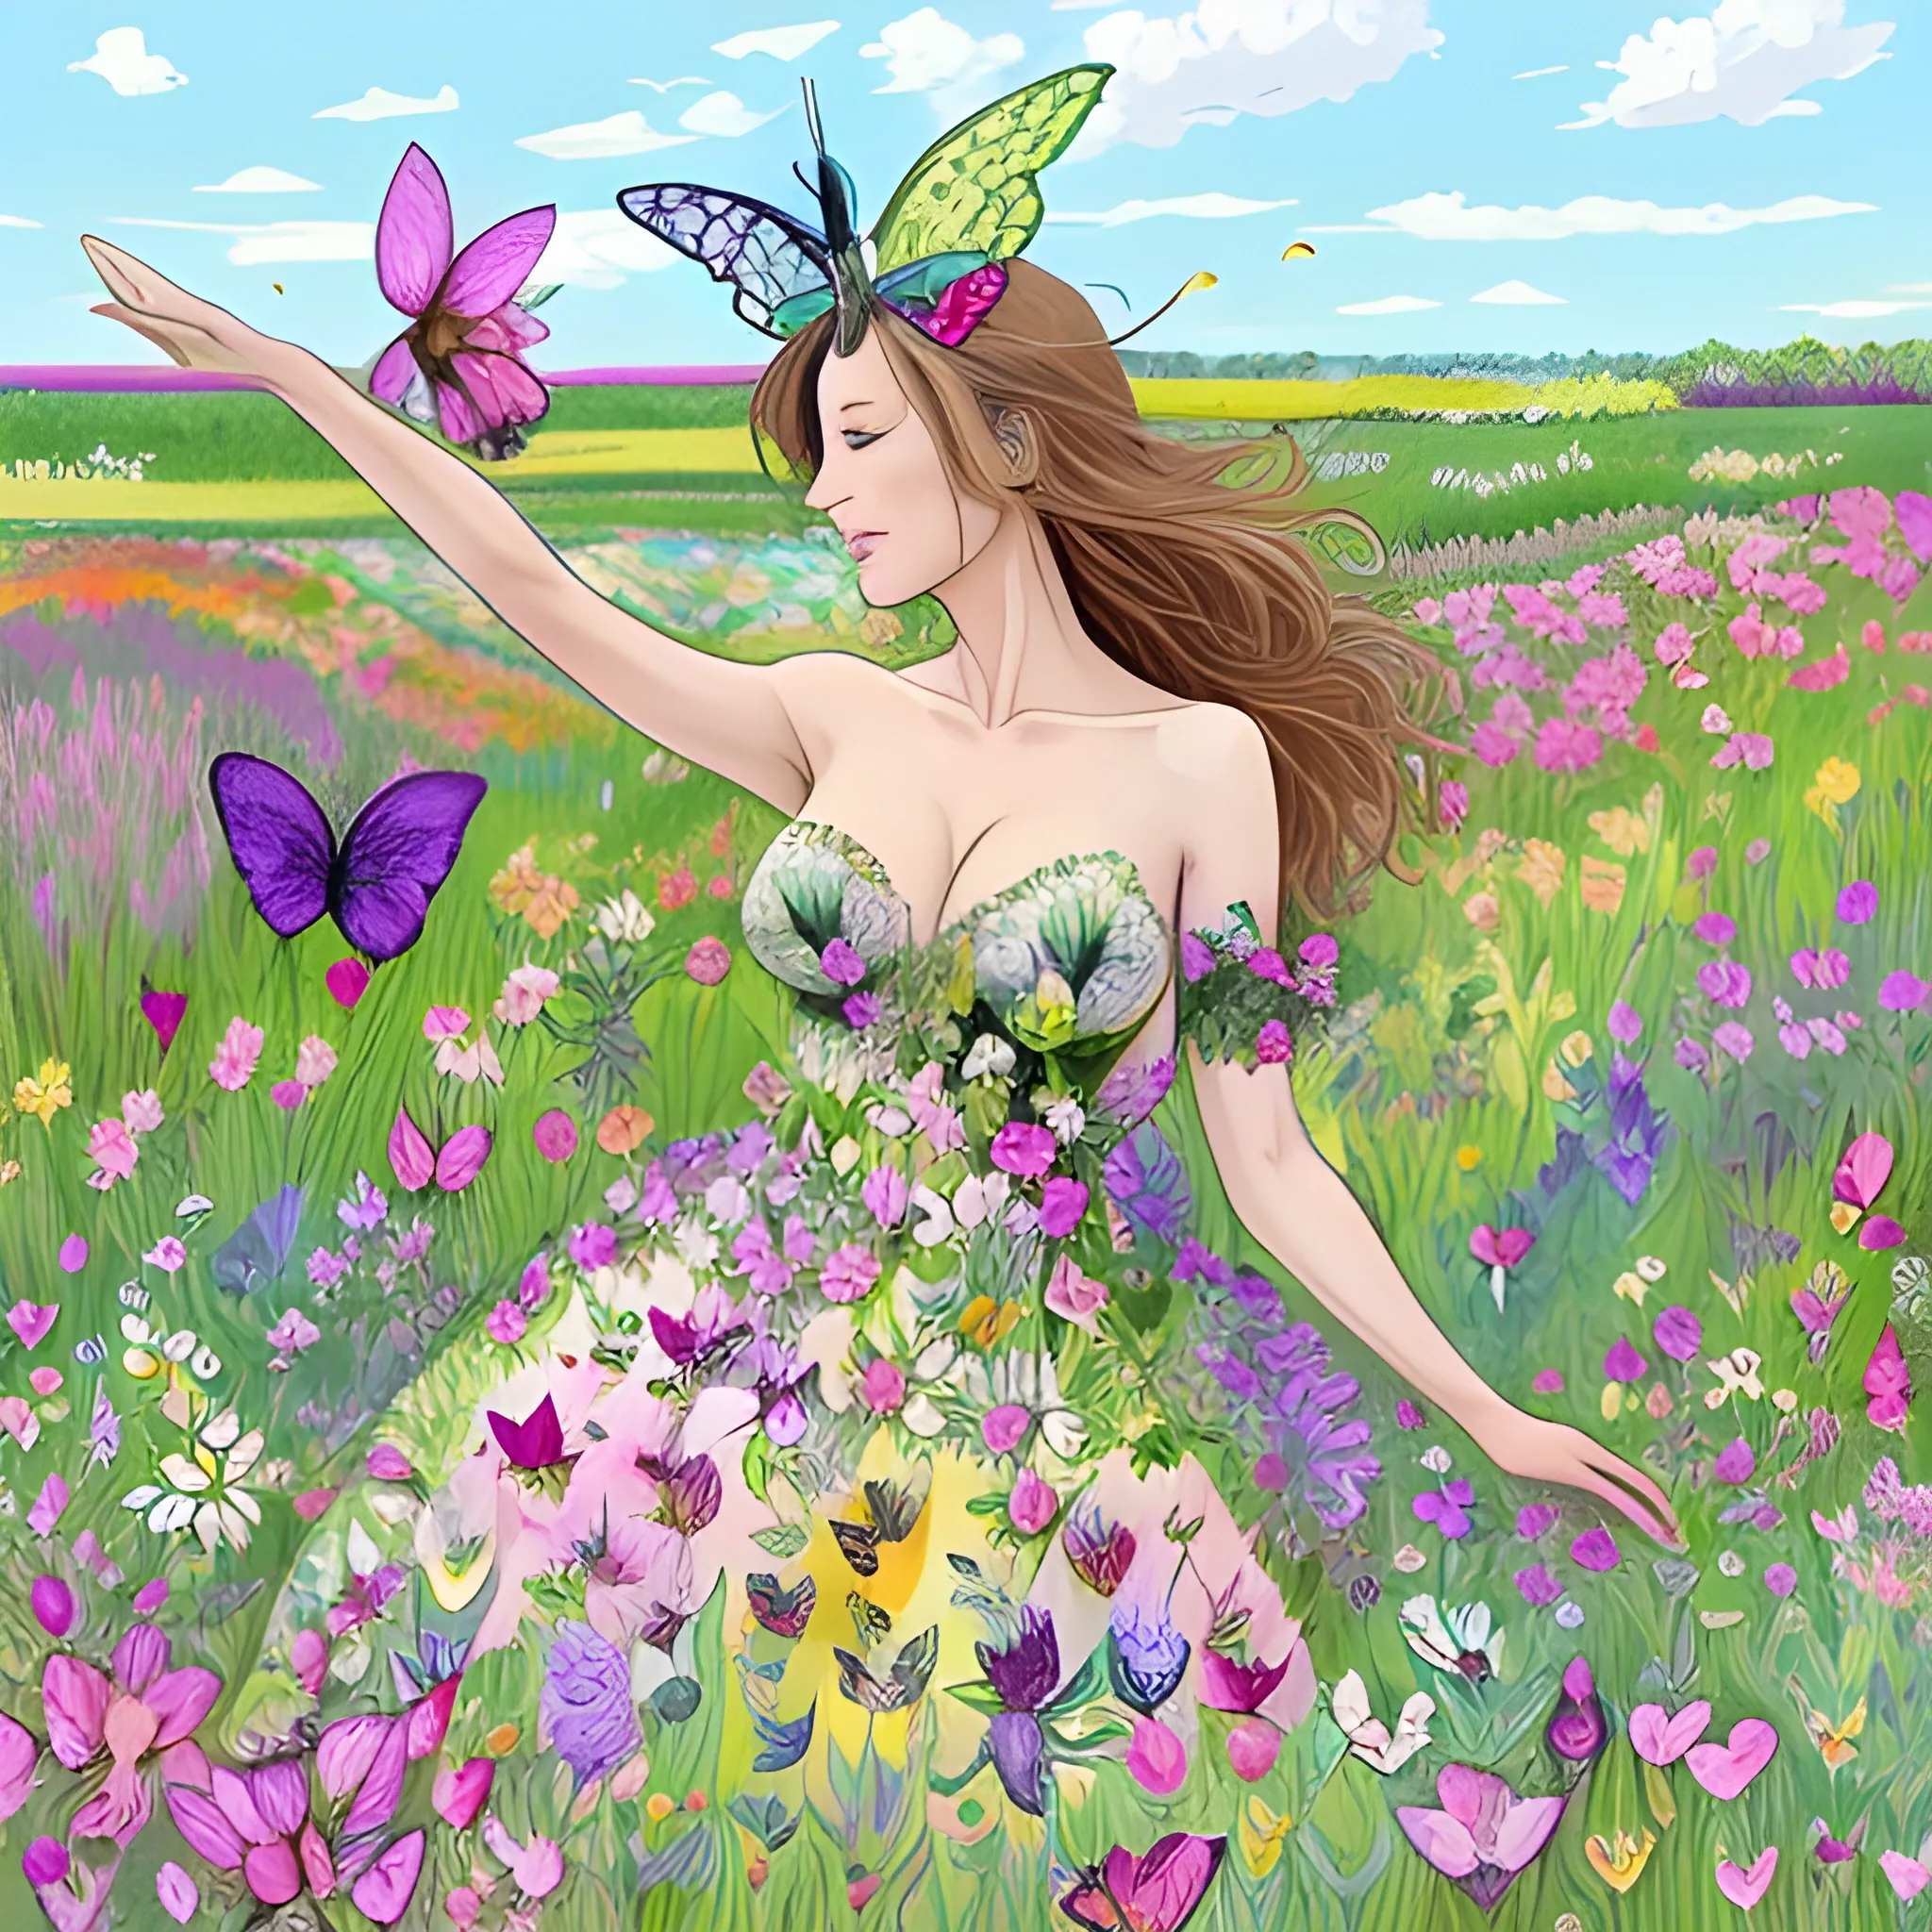 jolie femme dans une prairie fleurie et des papillons multicolores qui volent autour de la jolie femme debout dans la prairie fleurie de beaucoup de fleurs exotiques colorées, , Cartoon